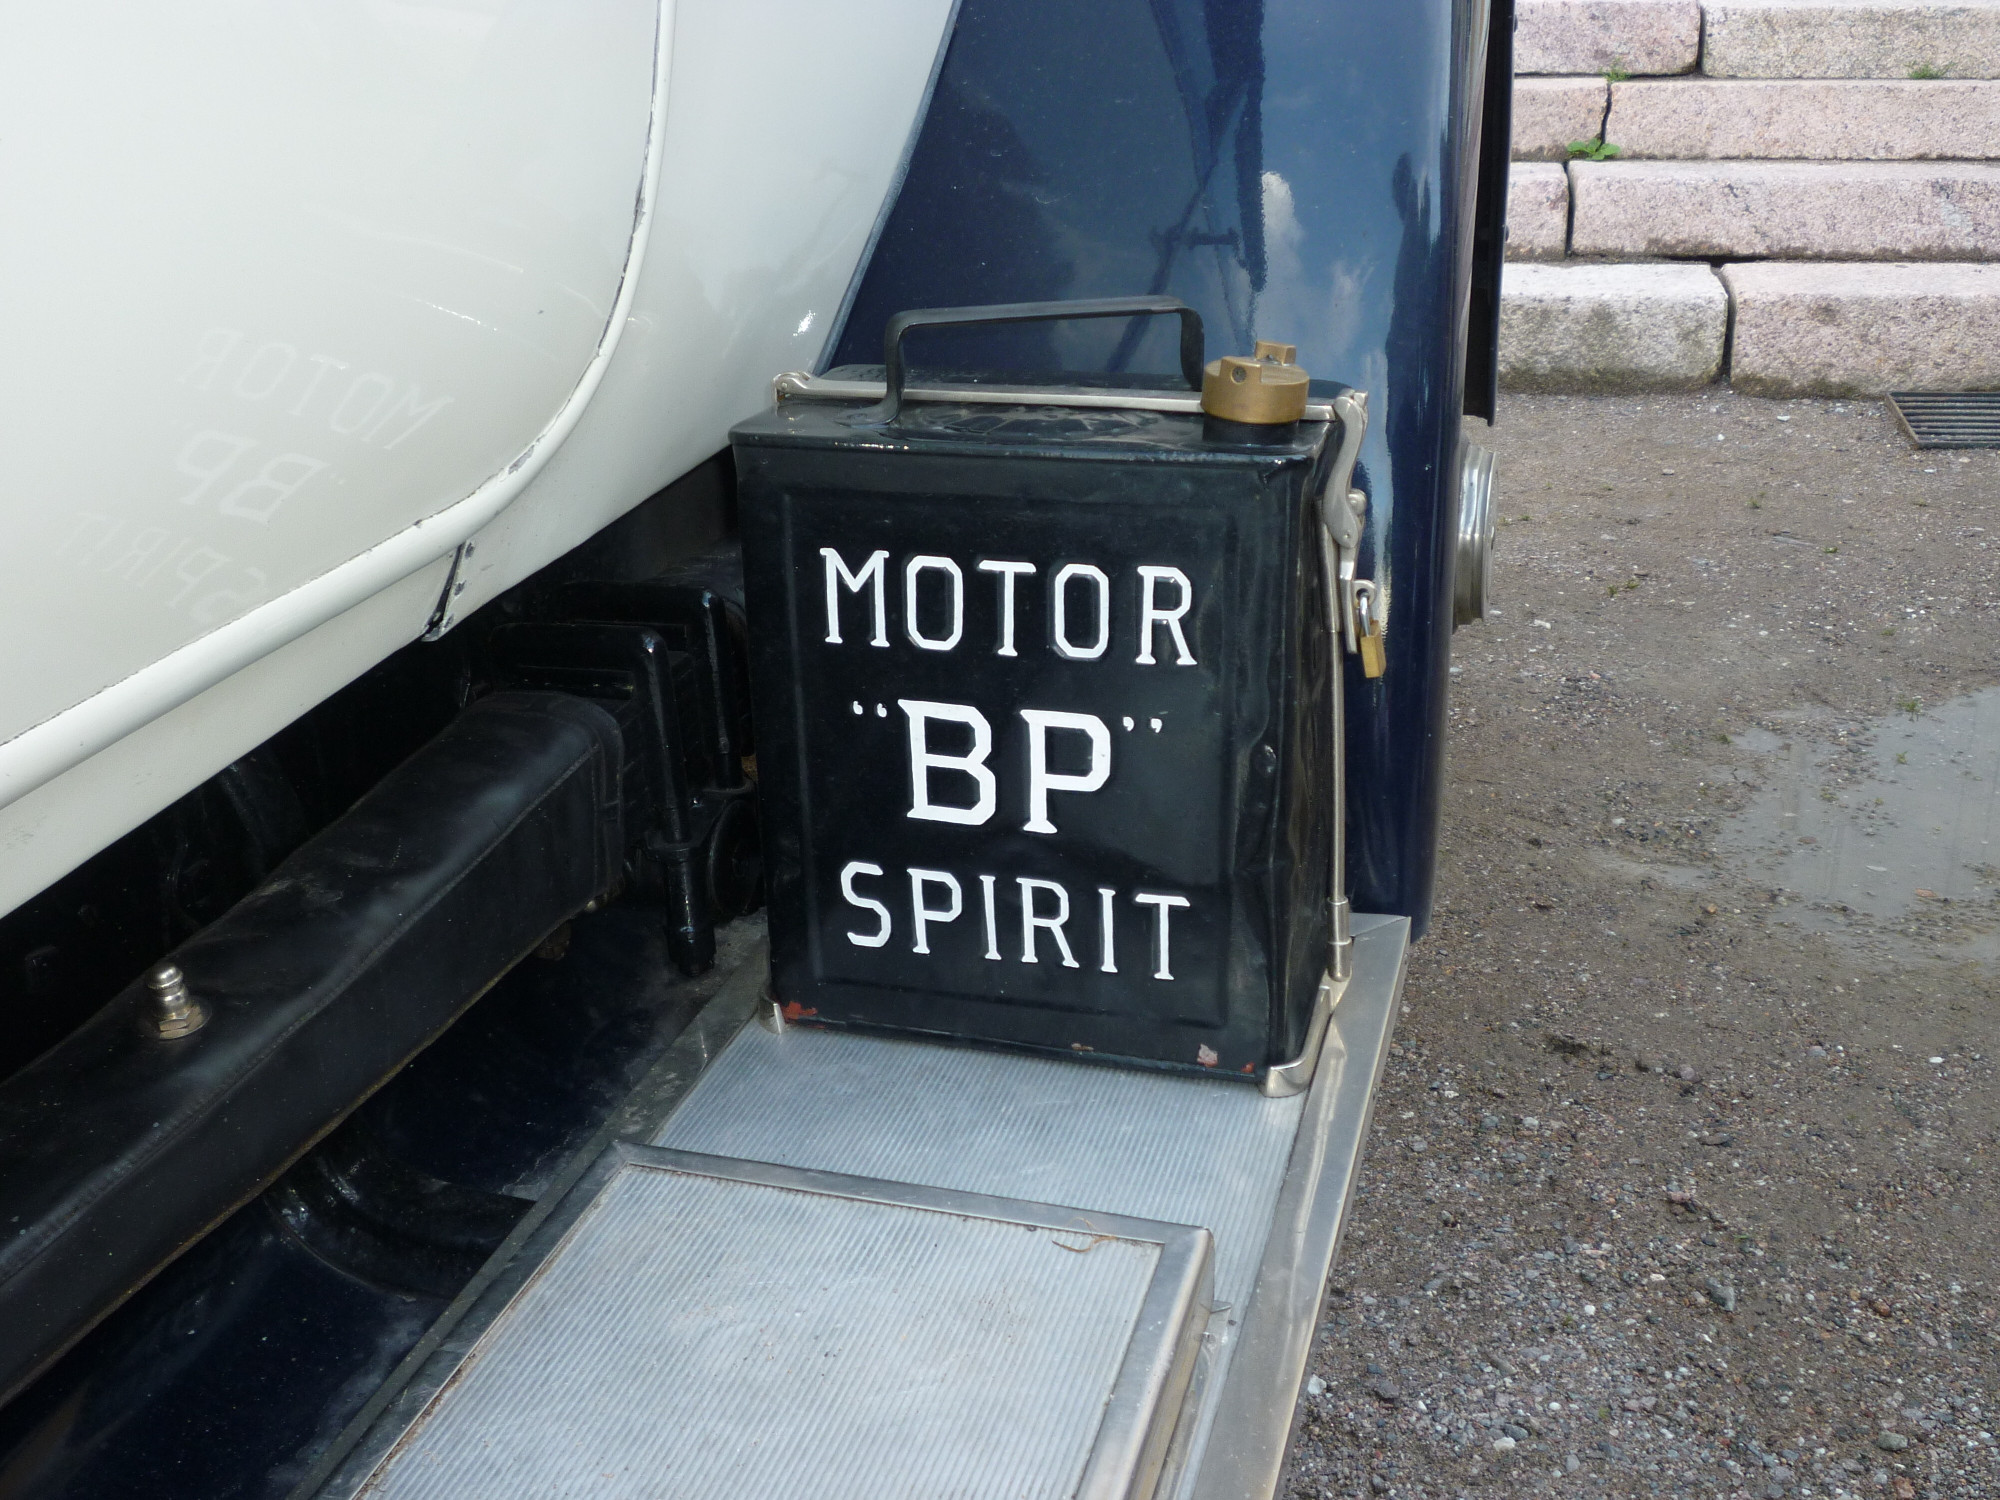 Rolls Royseja Mustion linnalla 17.7.2012, Motor "BP" Spirit